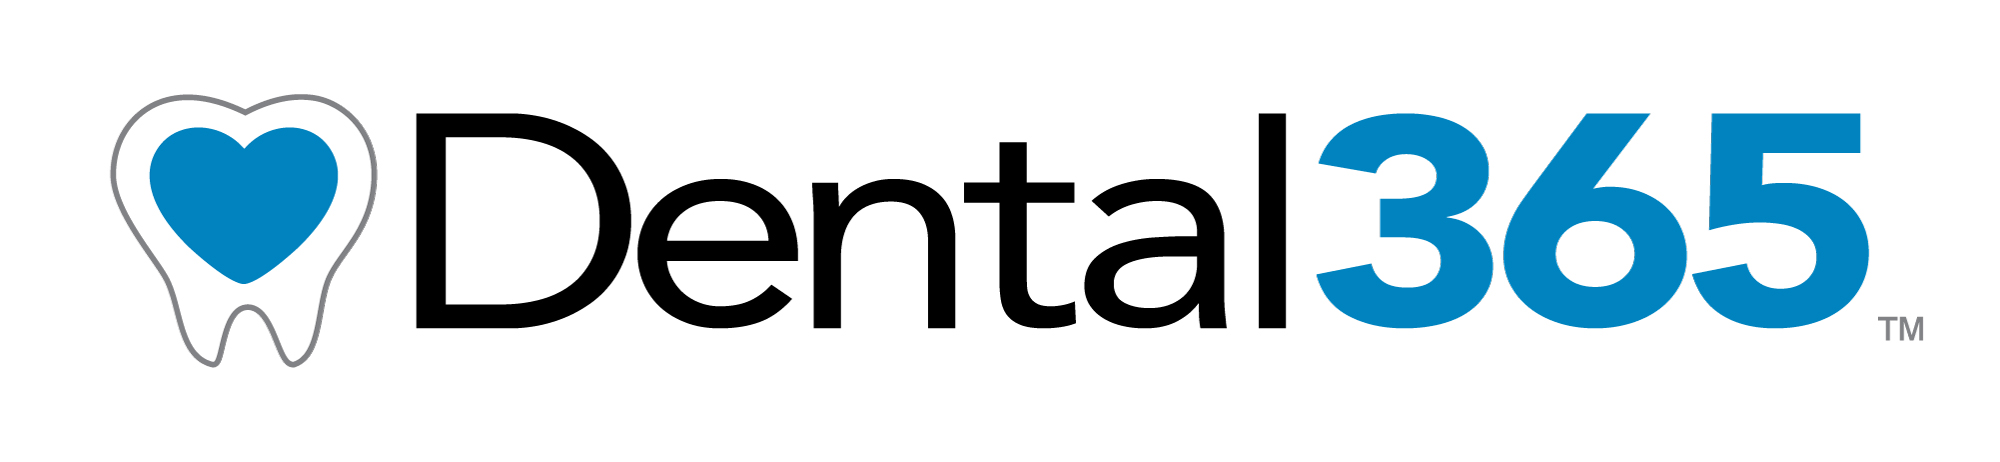 Dental365 logo